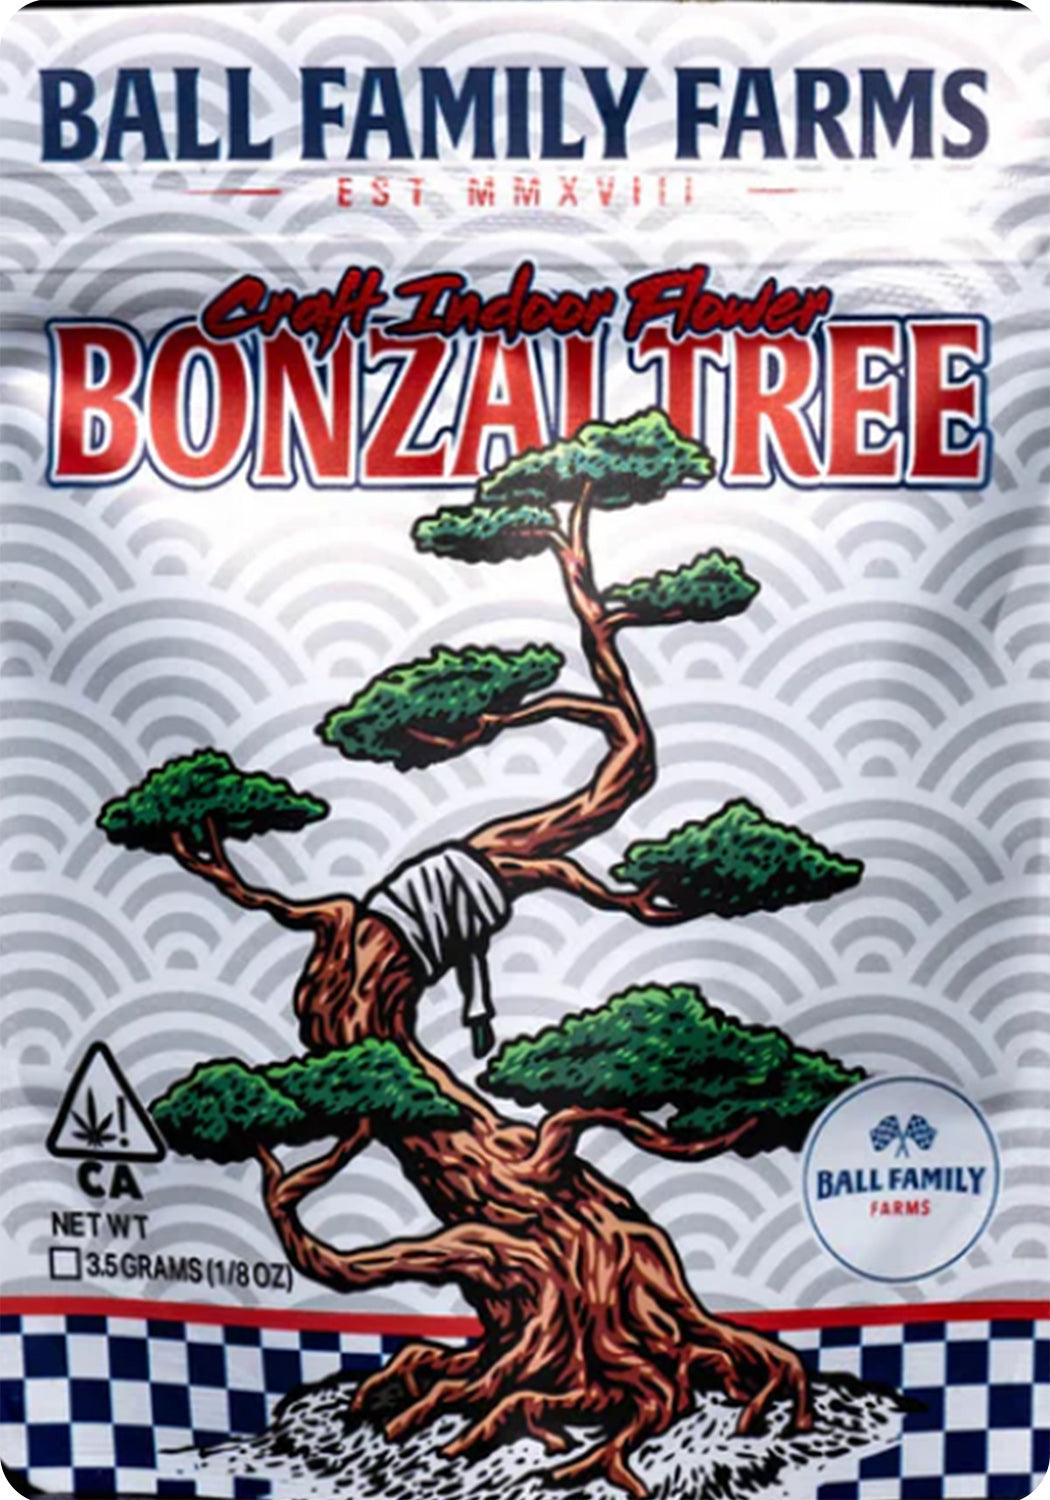 Bonzai Tree Mylar Bags 1g Gram 3.5g Eighth 7g Quarter 28g Oz Ounce 112g Quarter Pound Ball Family Farms Sticker Bag Fire Mylar